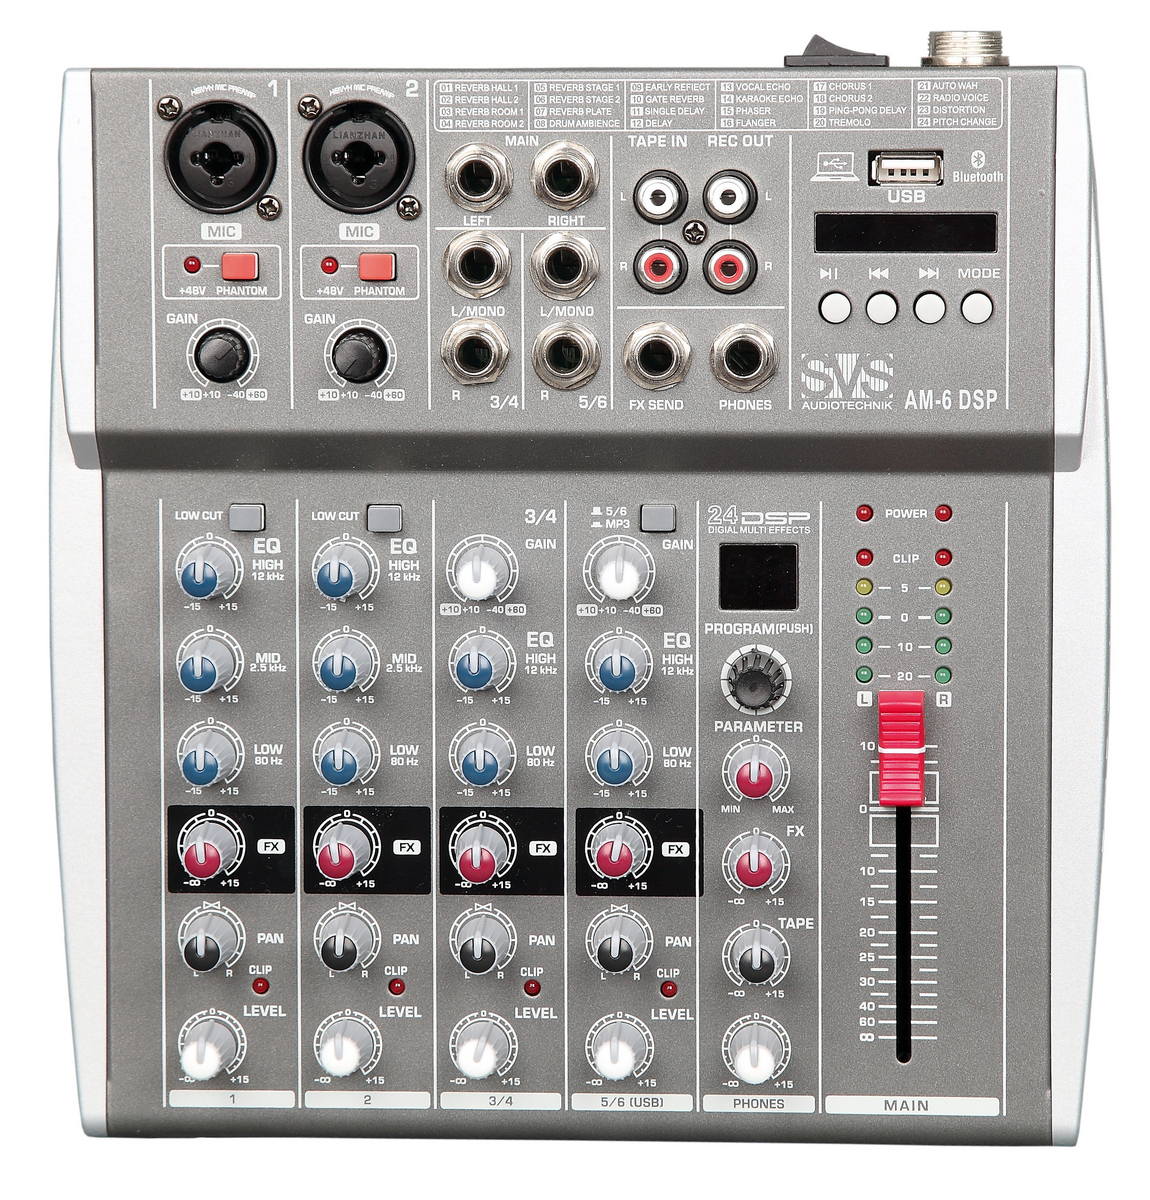 Микшерные пульты аналоговые SVS Audiotechnik mixers AM-6 DSP микшерные пульты аналоговые svs audiotechnik mixers am 4 dsp